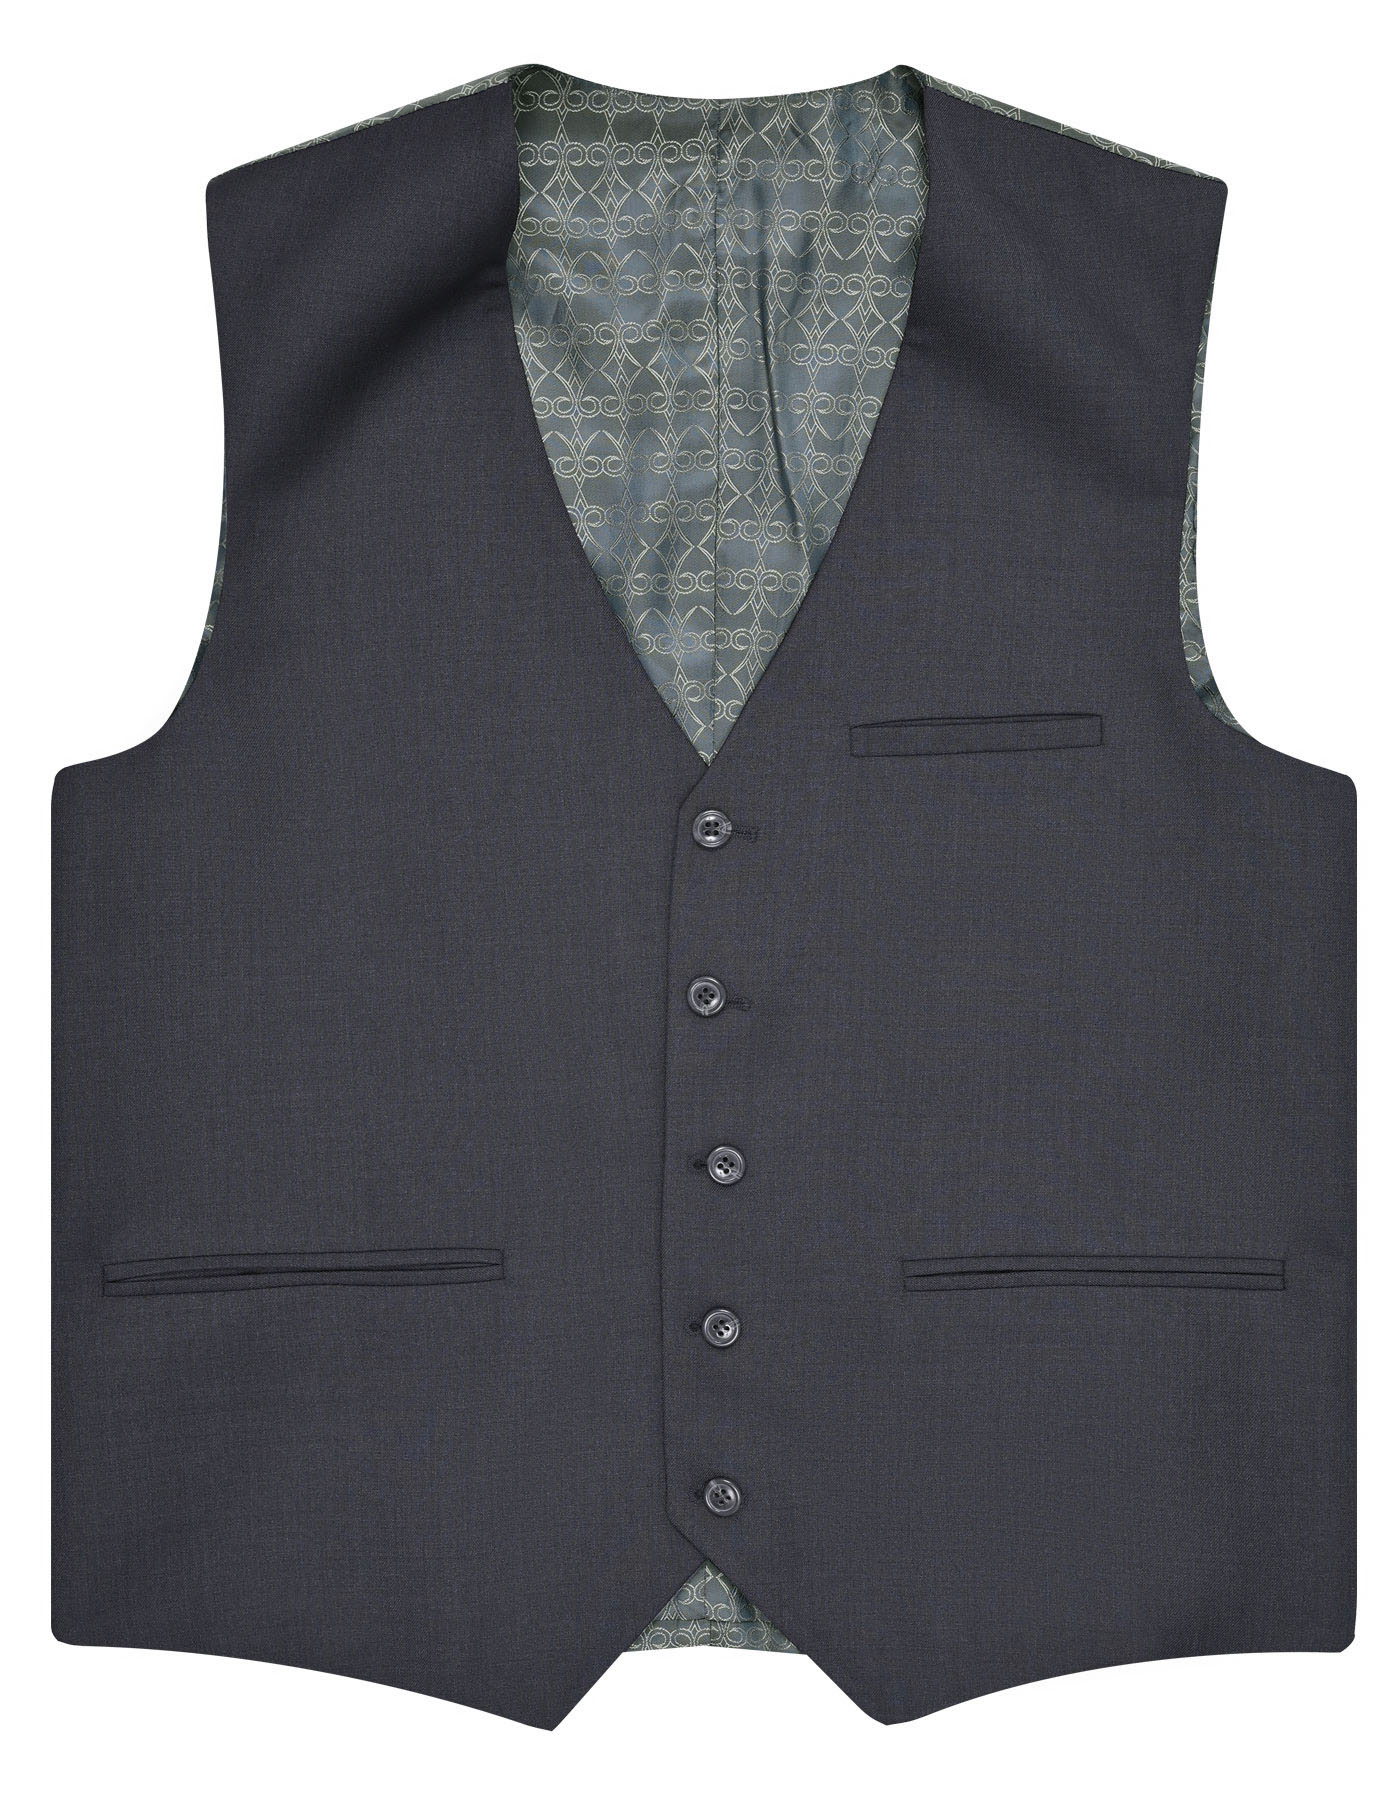 Suit Charcoal ST1053C Uniworth 3 Pcs Suit